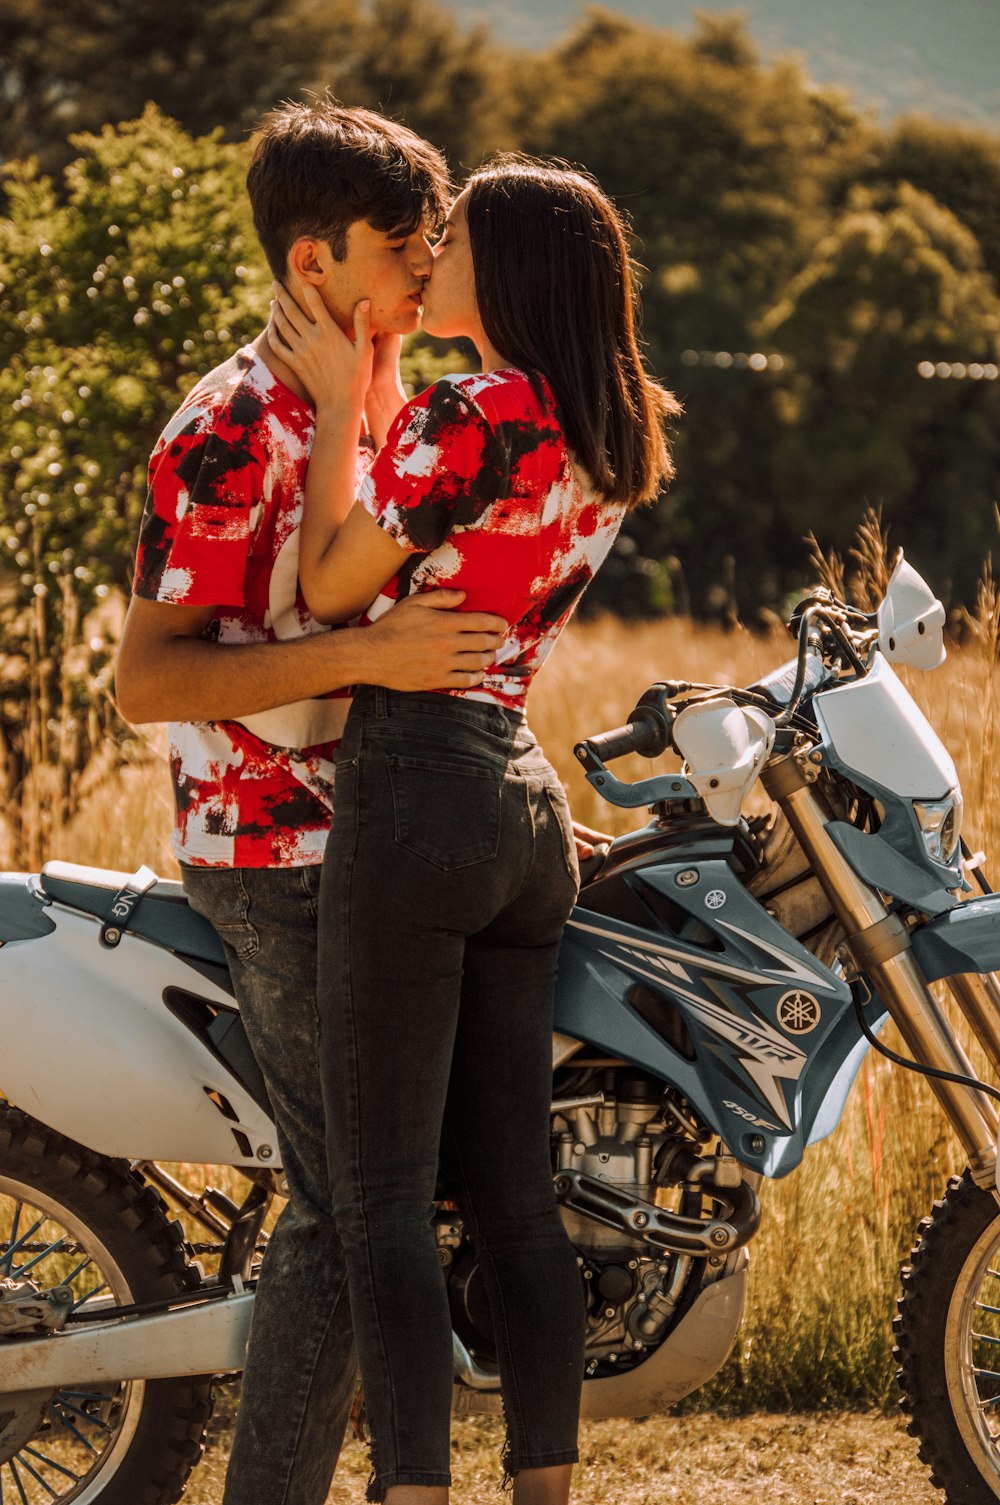 오토바이 옆에서 키스하는 남자와 여자